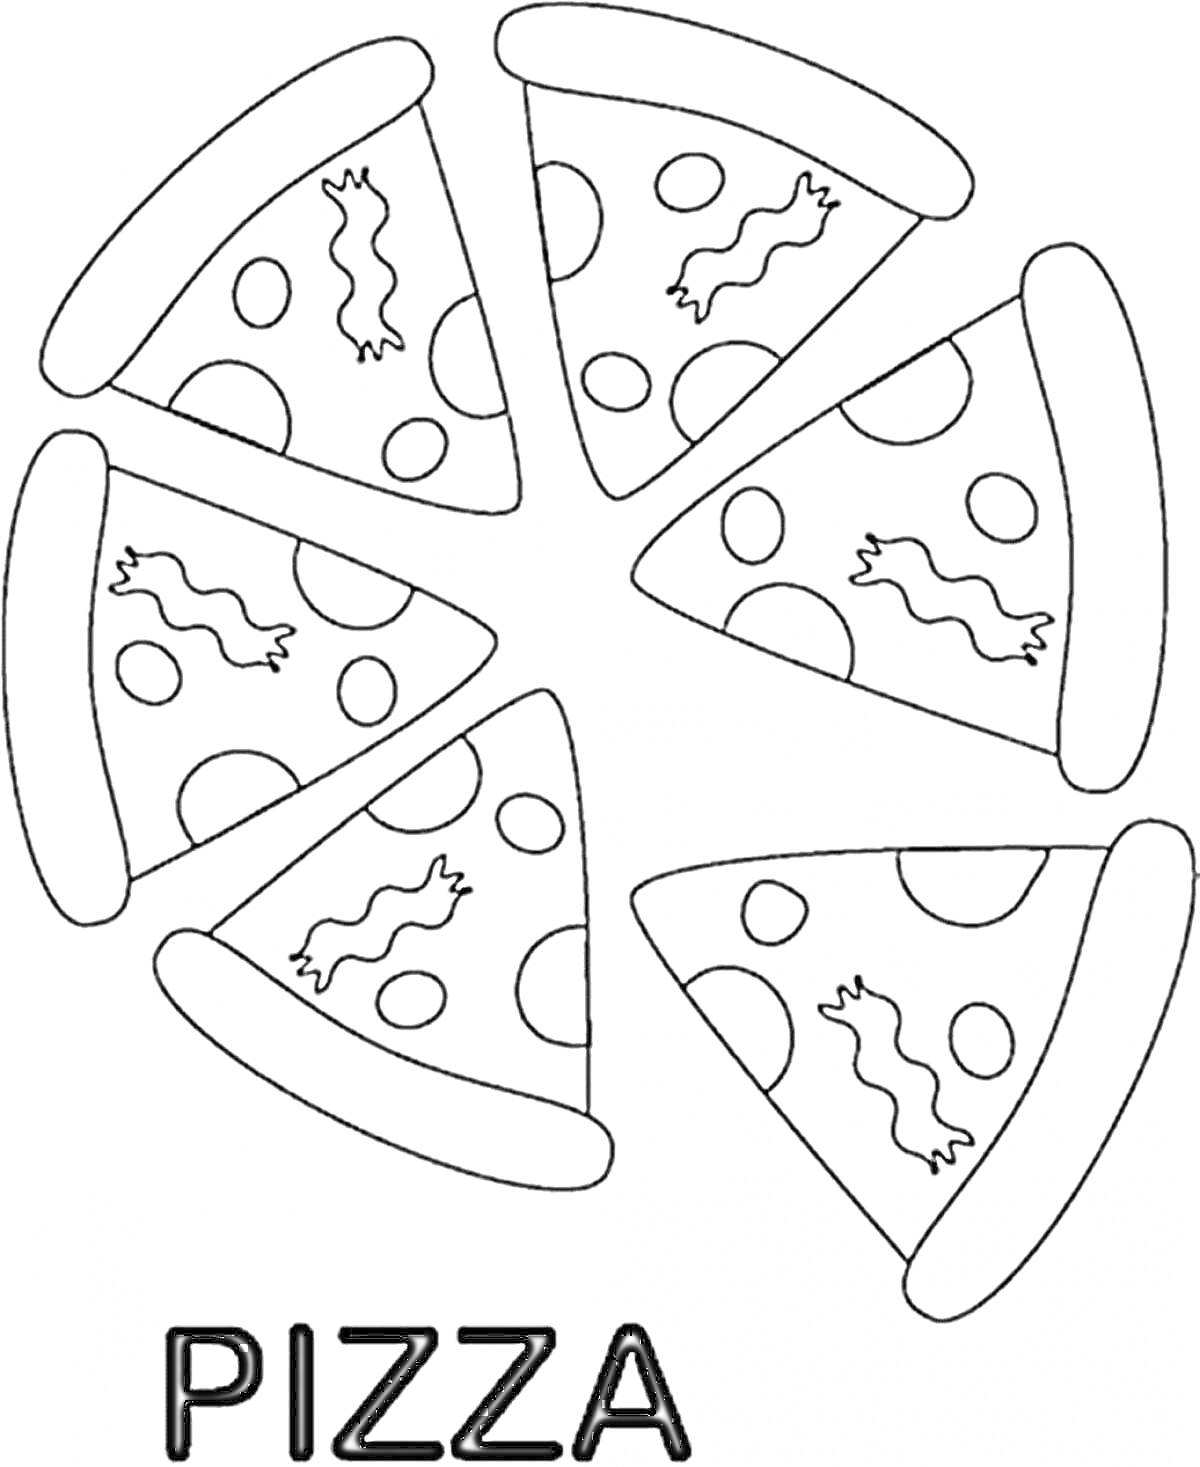 Раскраска Чёрно-белая раскраска с изображением шести кусочков пиццы с колбасками и круглыми ломтиками сыра, разложенных в круг. Внизу написано слово 